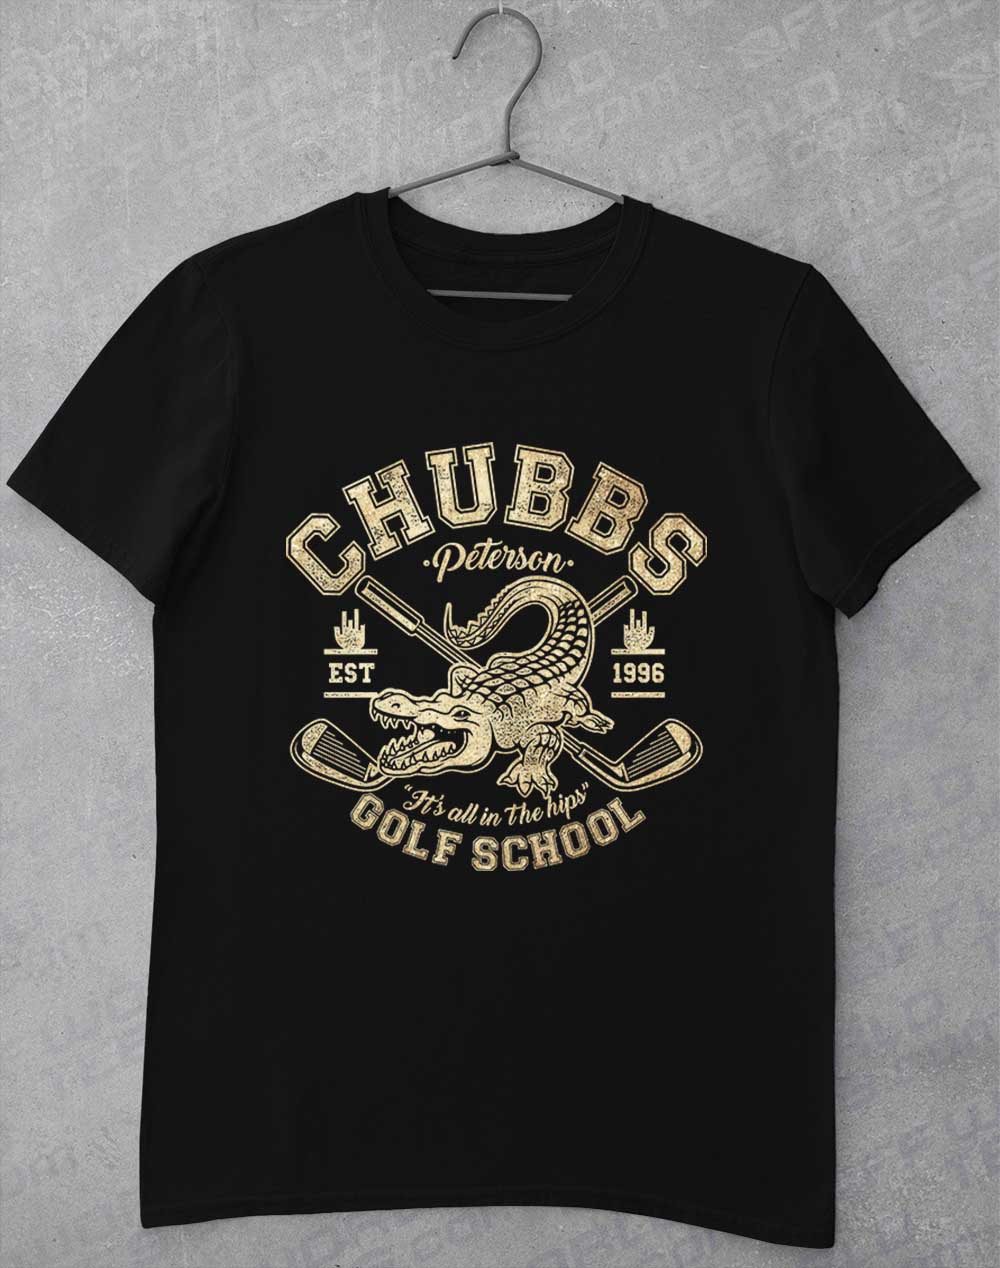 Black - Chubb's Golf School 1996 T-Shirt